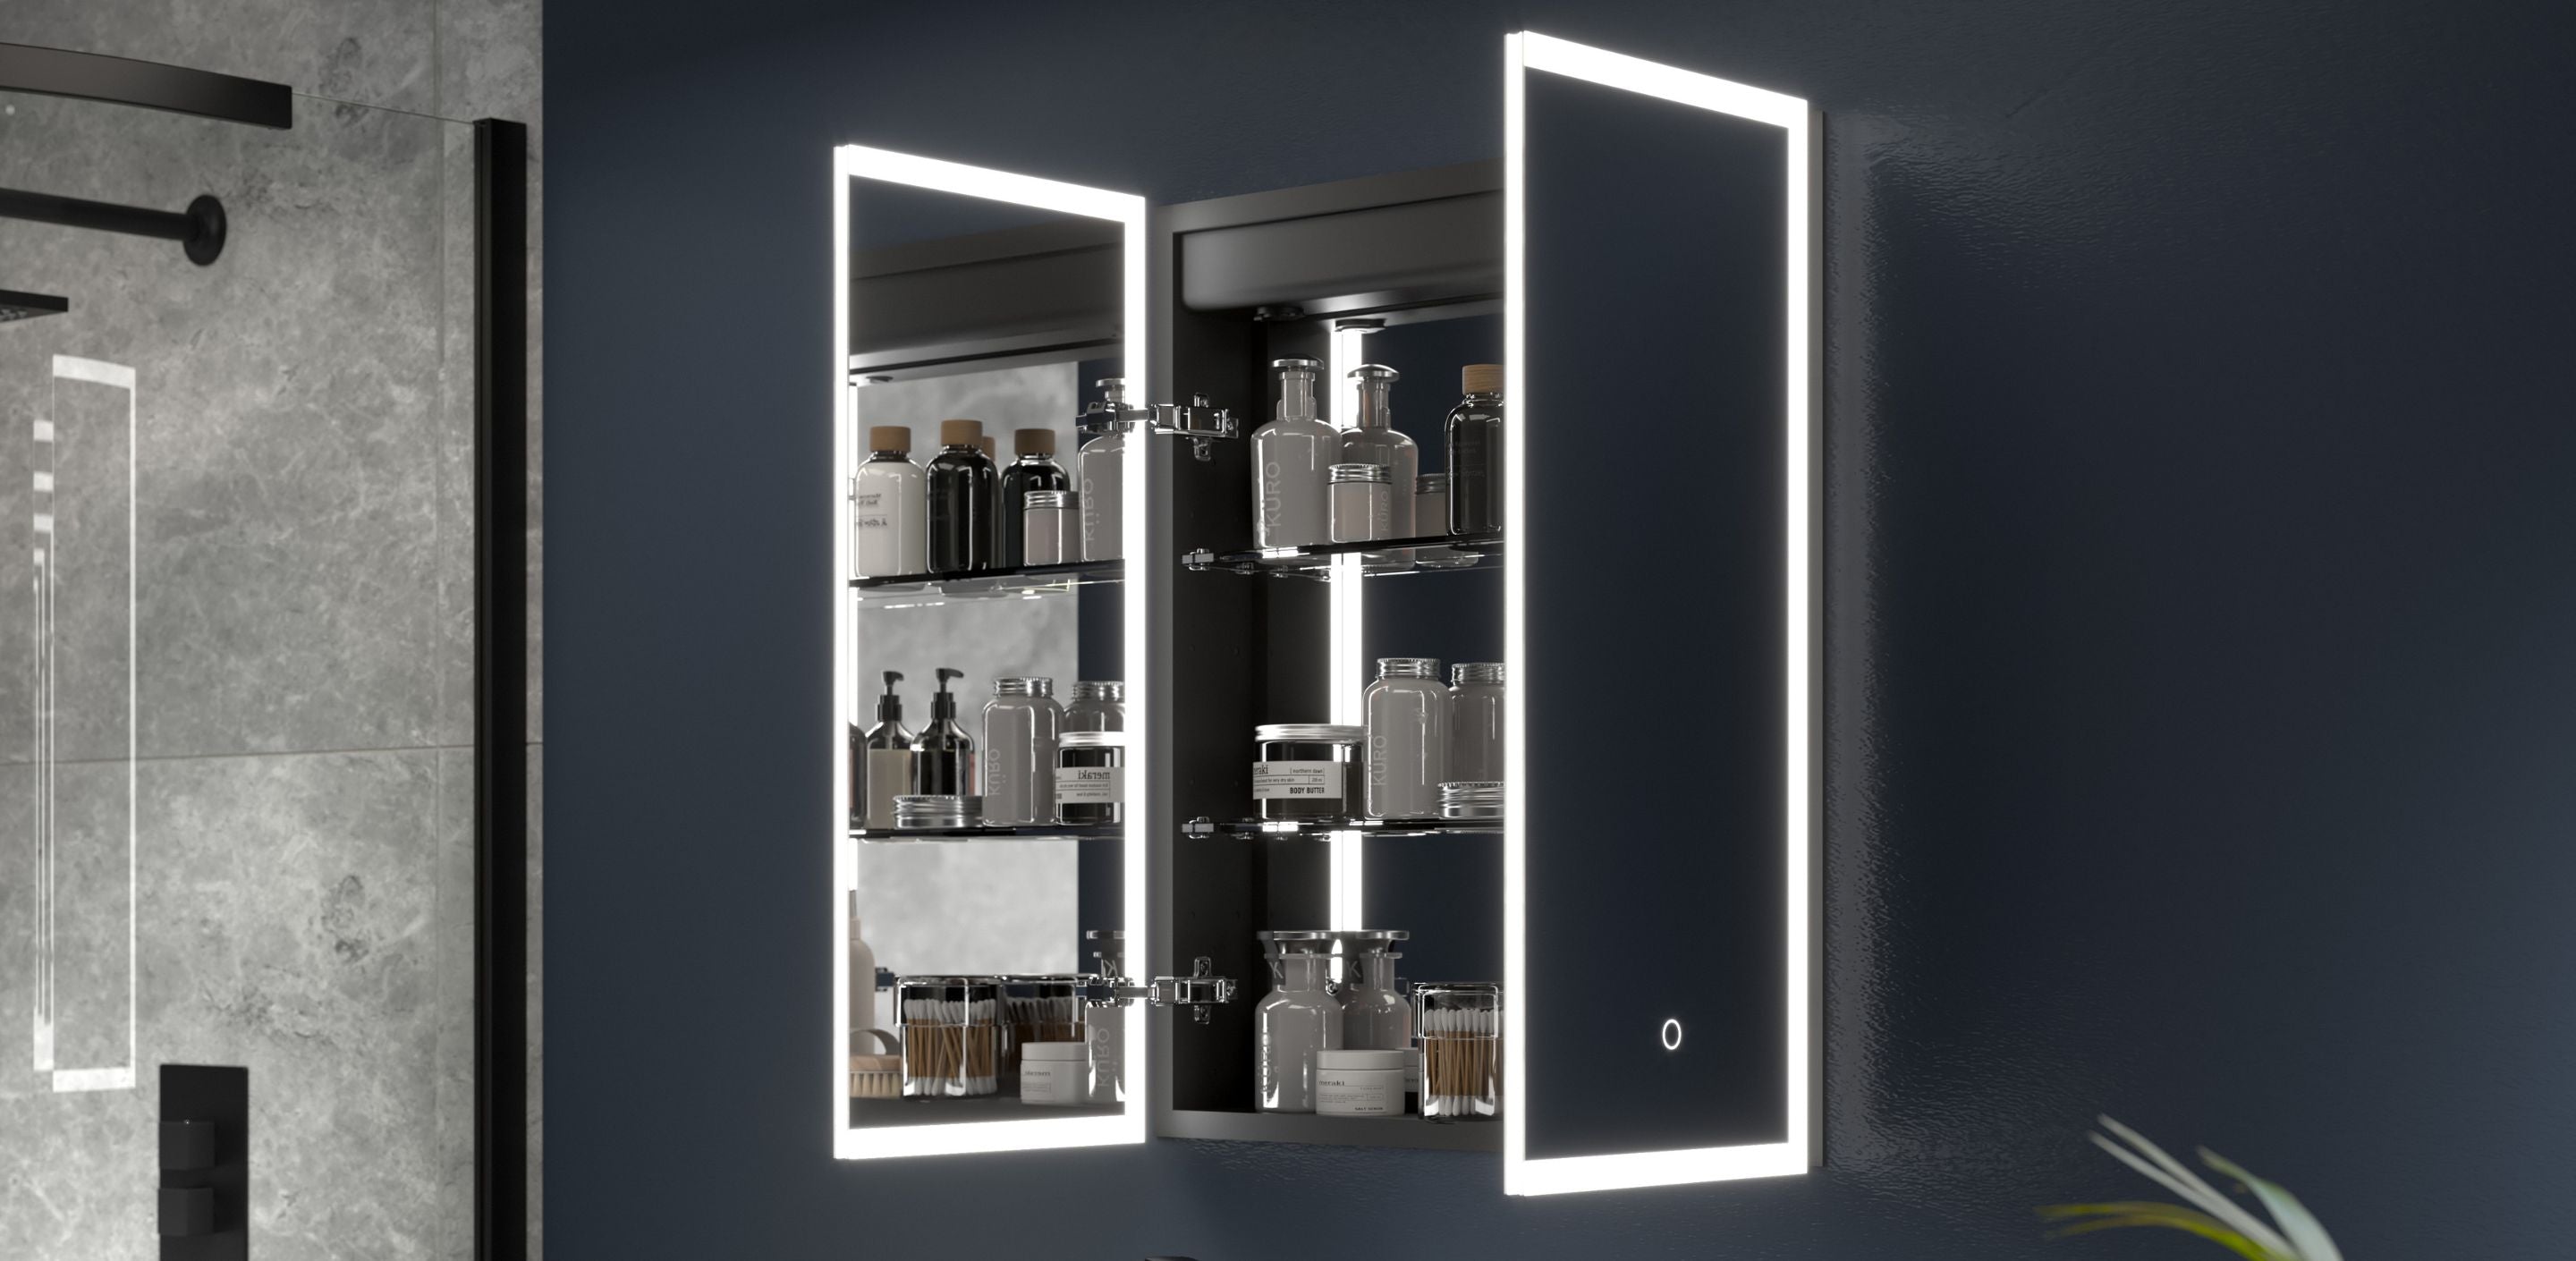 Wall-mounted bathroom storage ideas